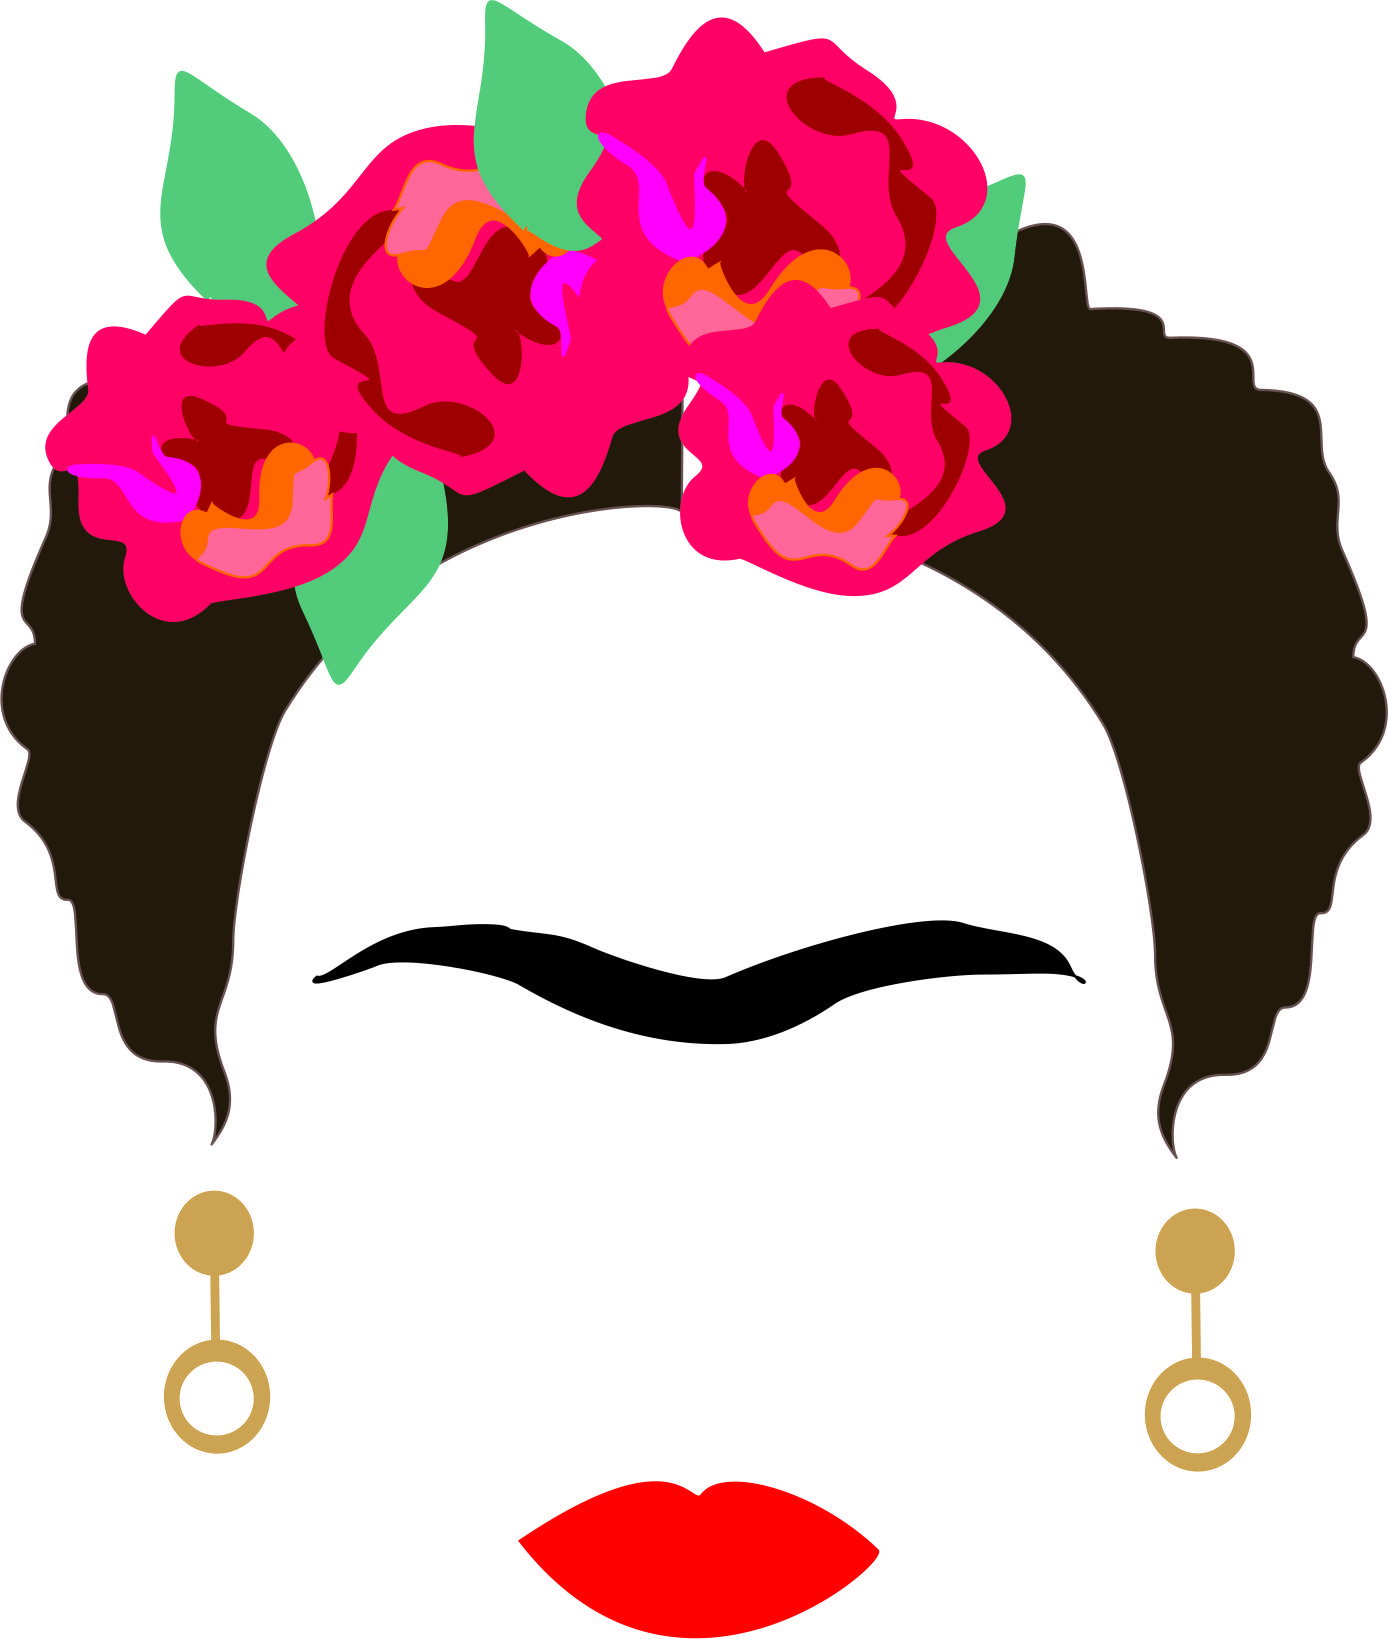 Representación simplificada de un rostro de una mujer con flores en su cabeza cejas anchas, labios rojos y aretes.